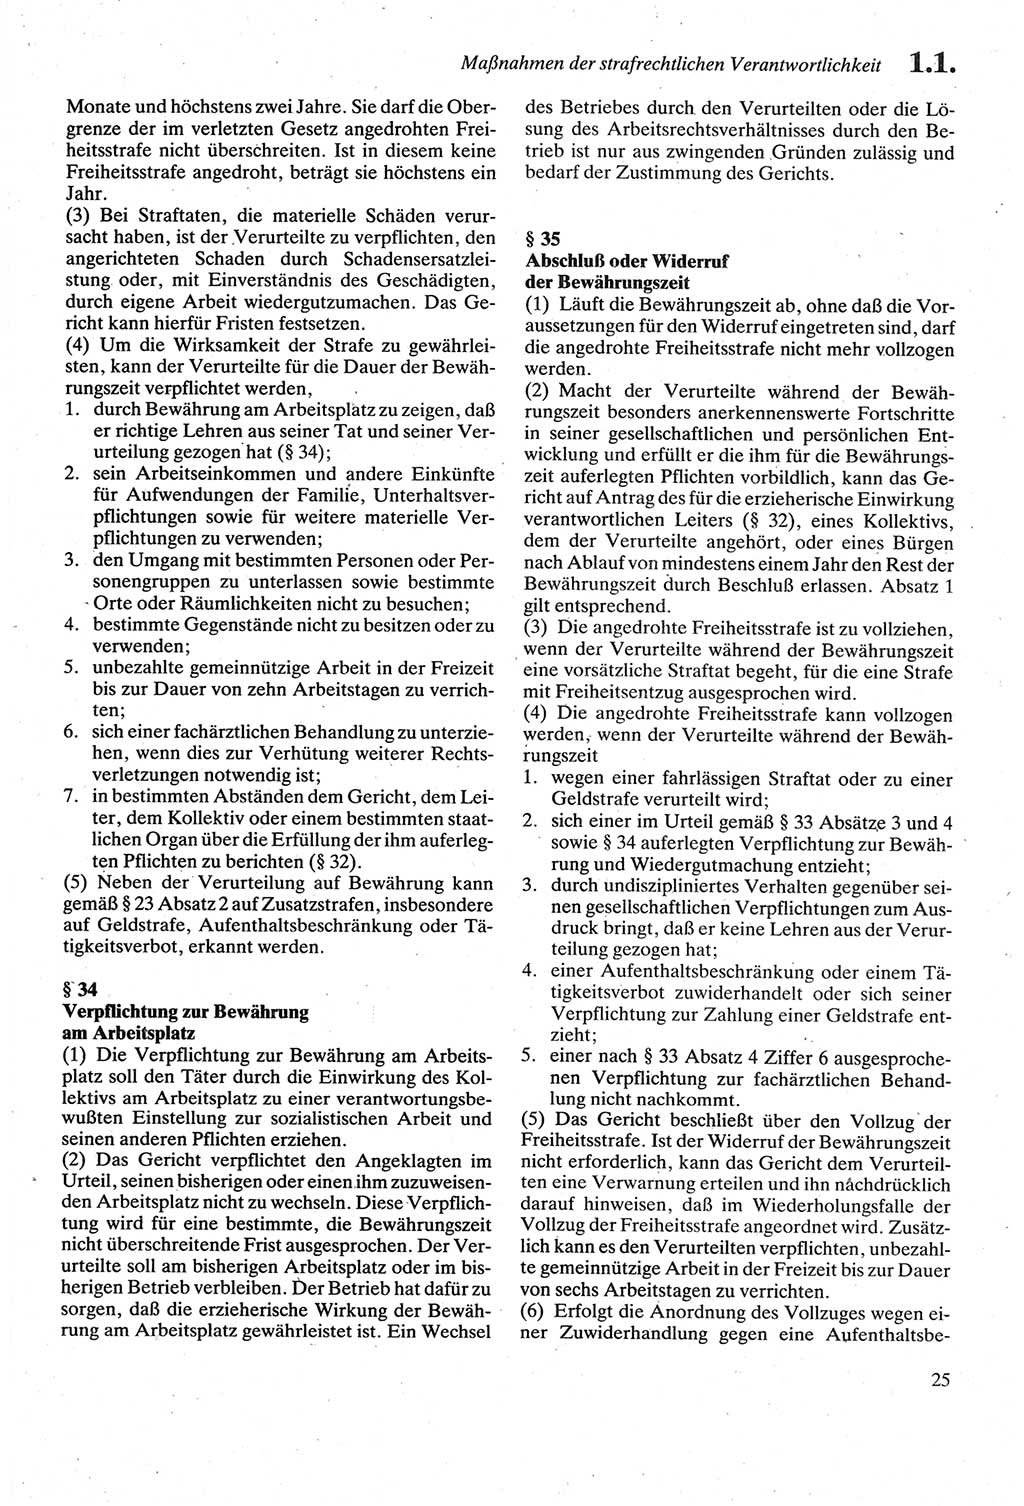 Strafgesetzbuch (StGB) der Deutschen Demokratischen Republik (DDR) sowie angrenzende Gesetze und Bestimmungen 1979, Seite 25 (StGB DDR Ges. Best. 1979, S. 25)